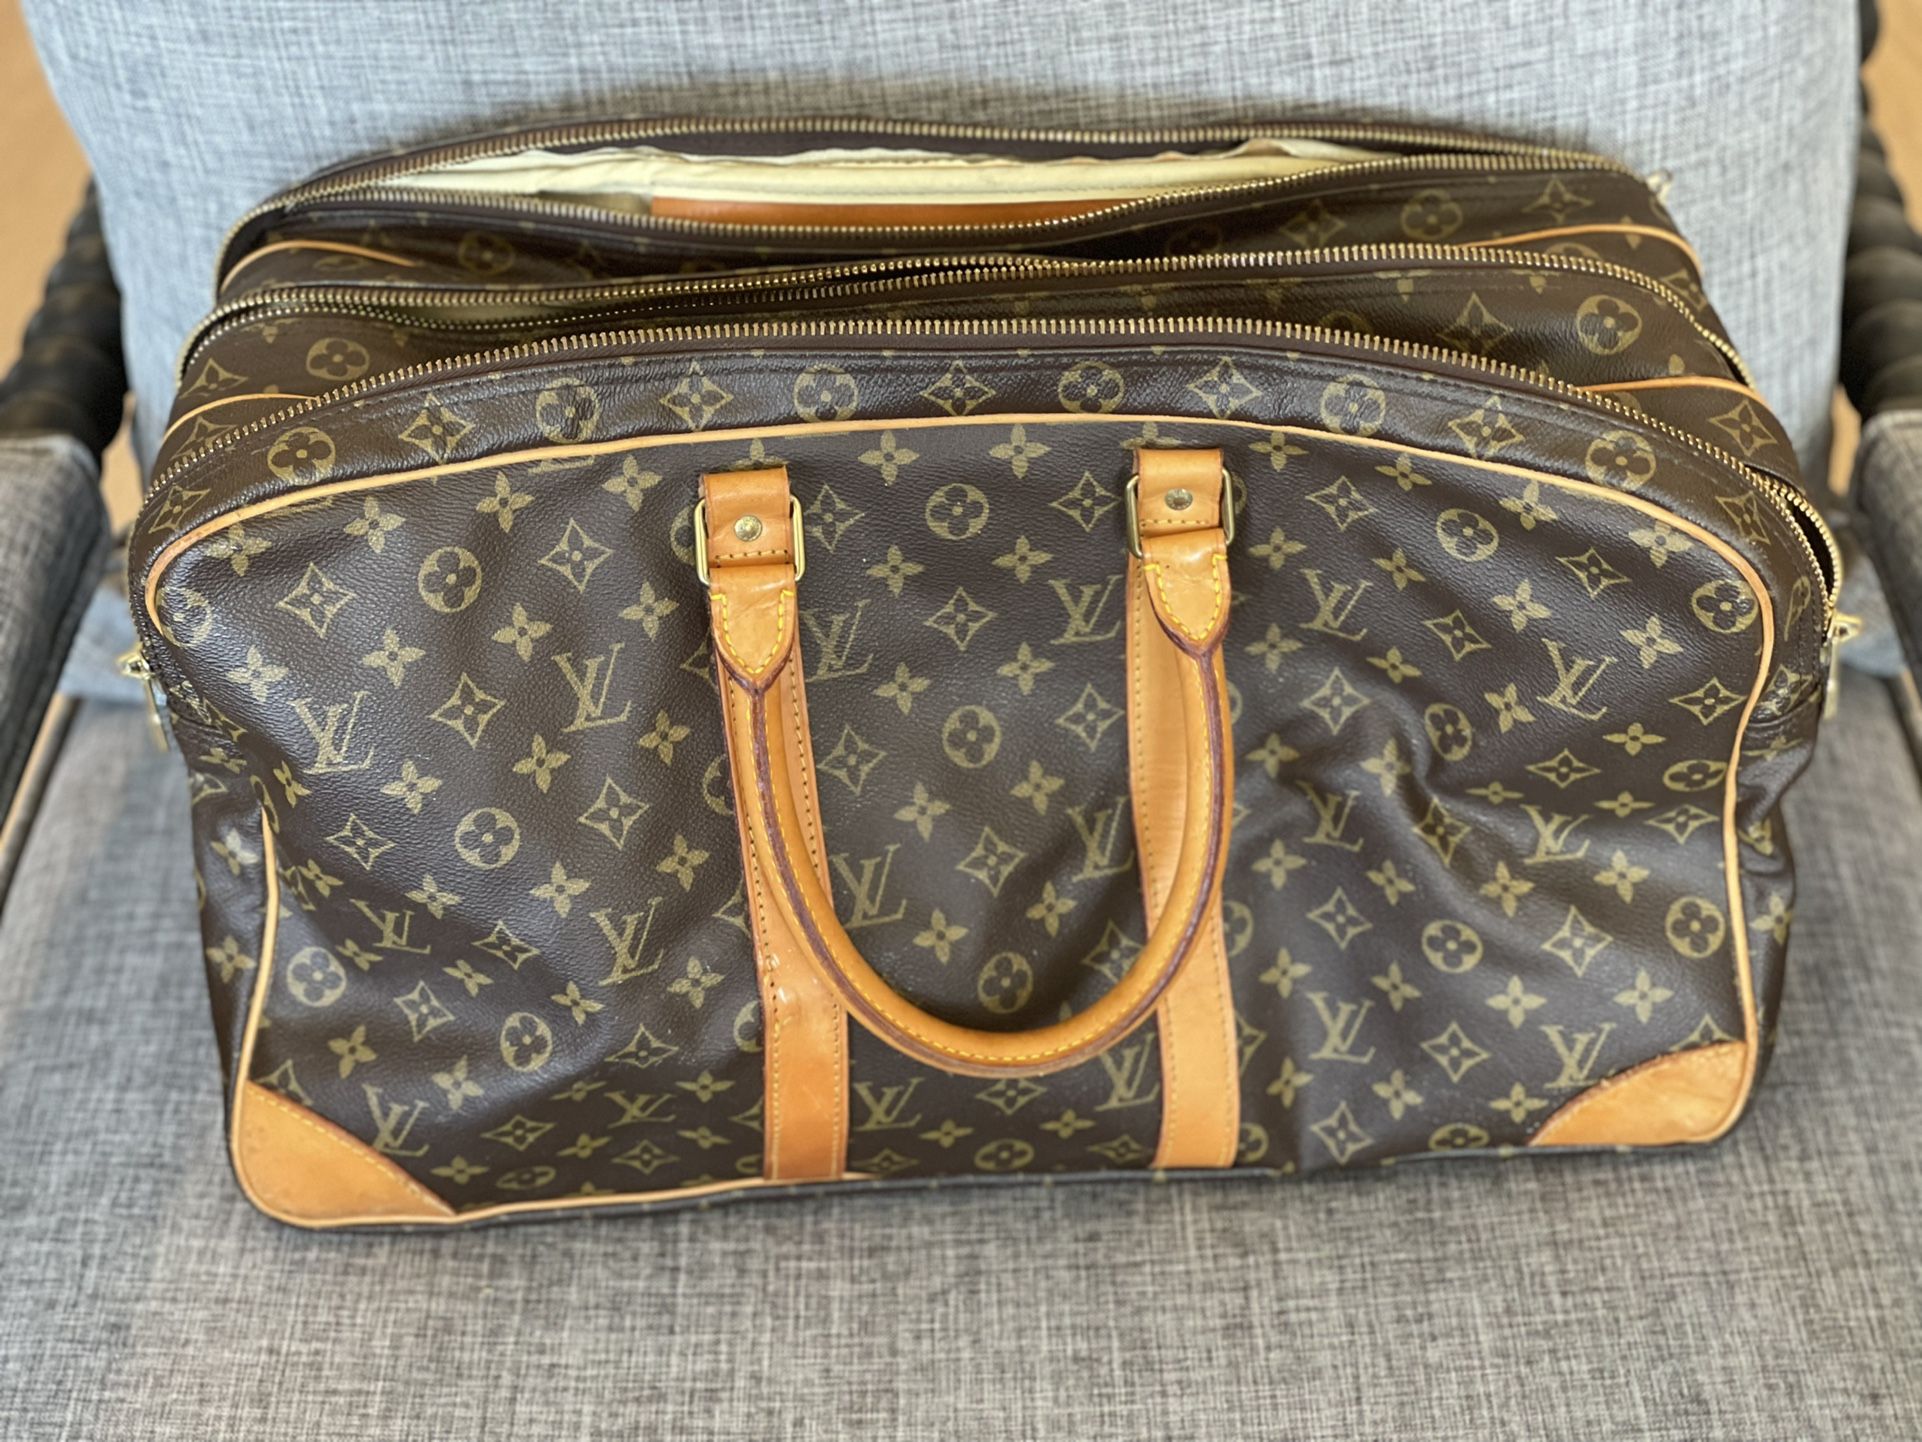 Louis Vuitton Sirius 50 3 zipper luggage Bag (Rare)